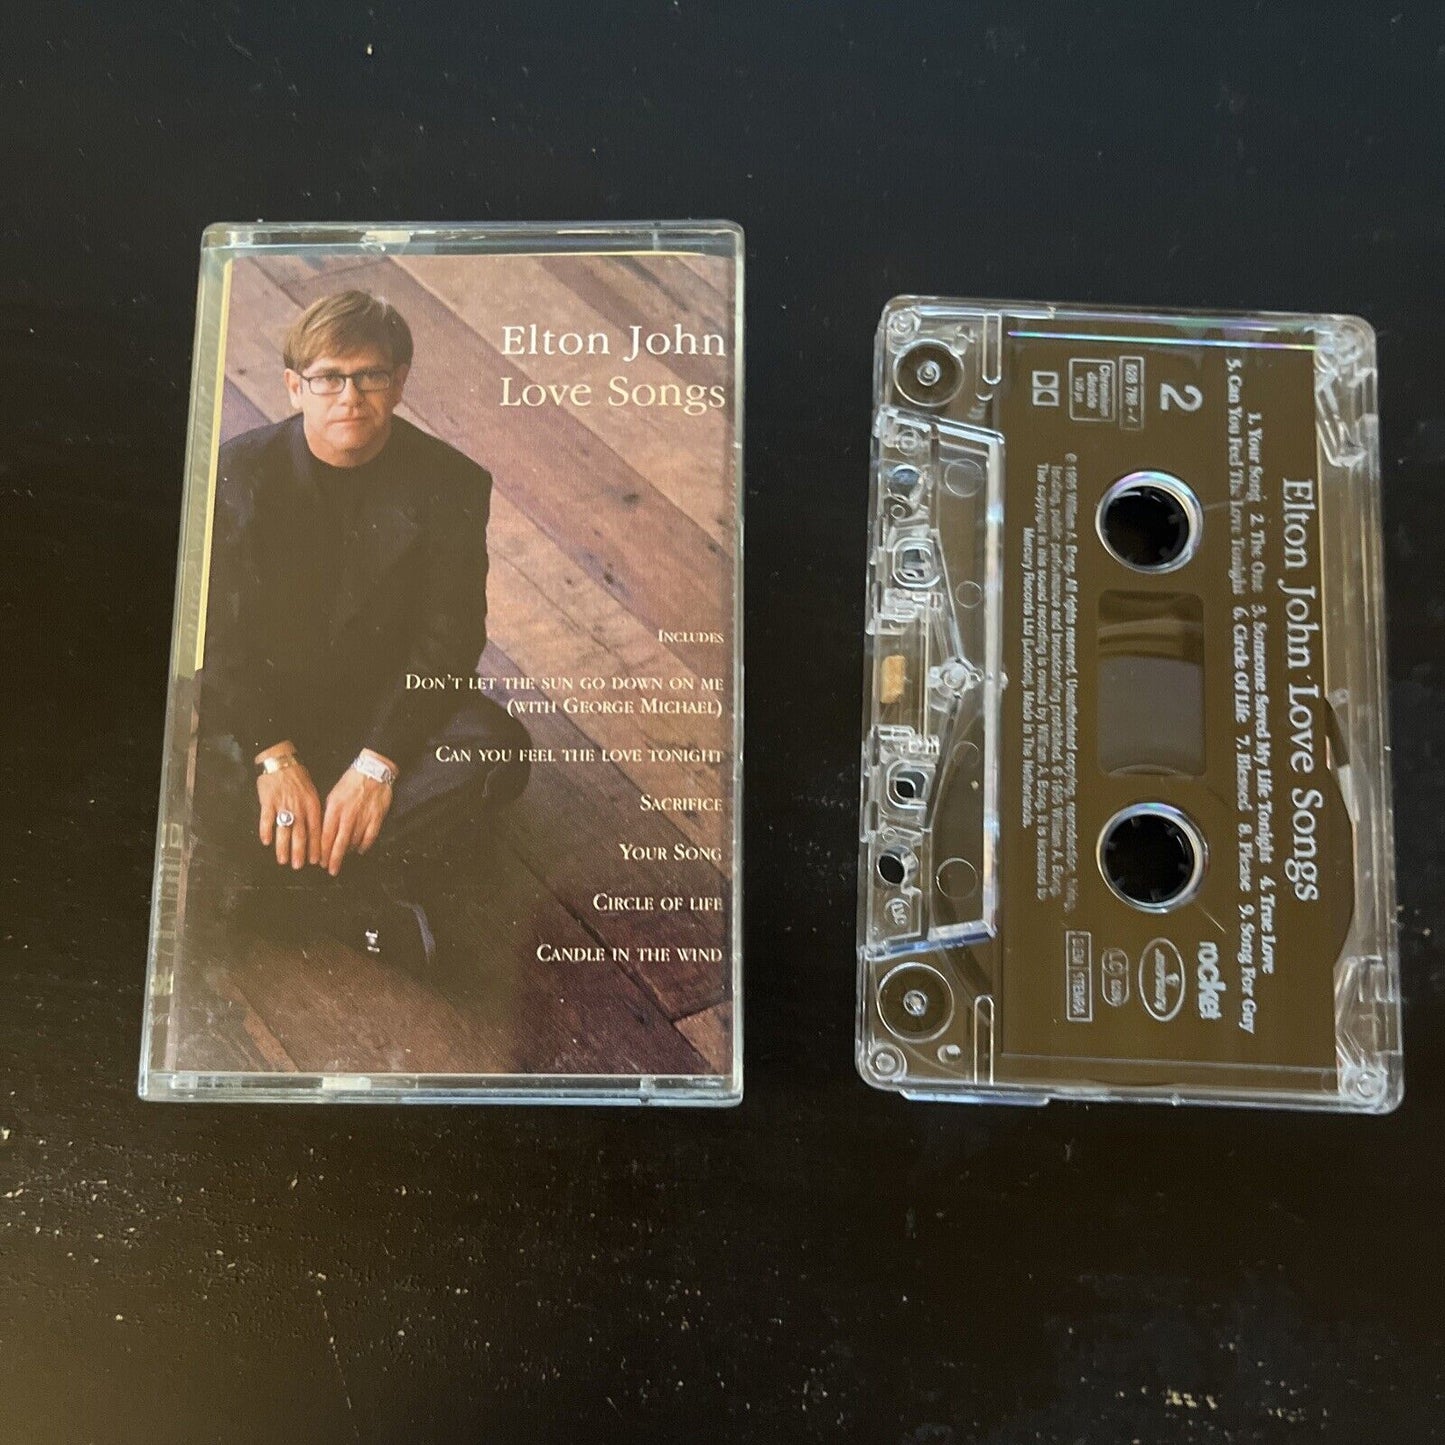 Elton John - Love Songs (Cassette Tape, 1982)